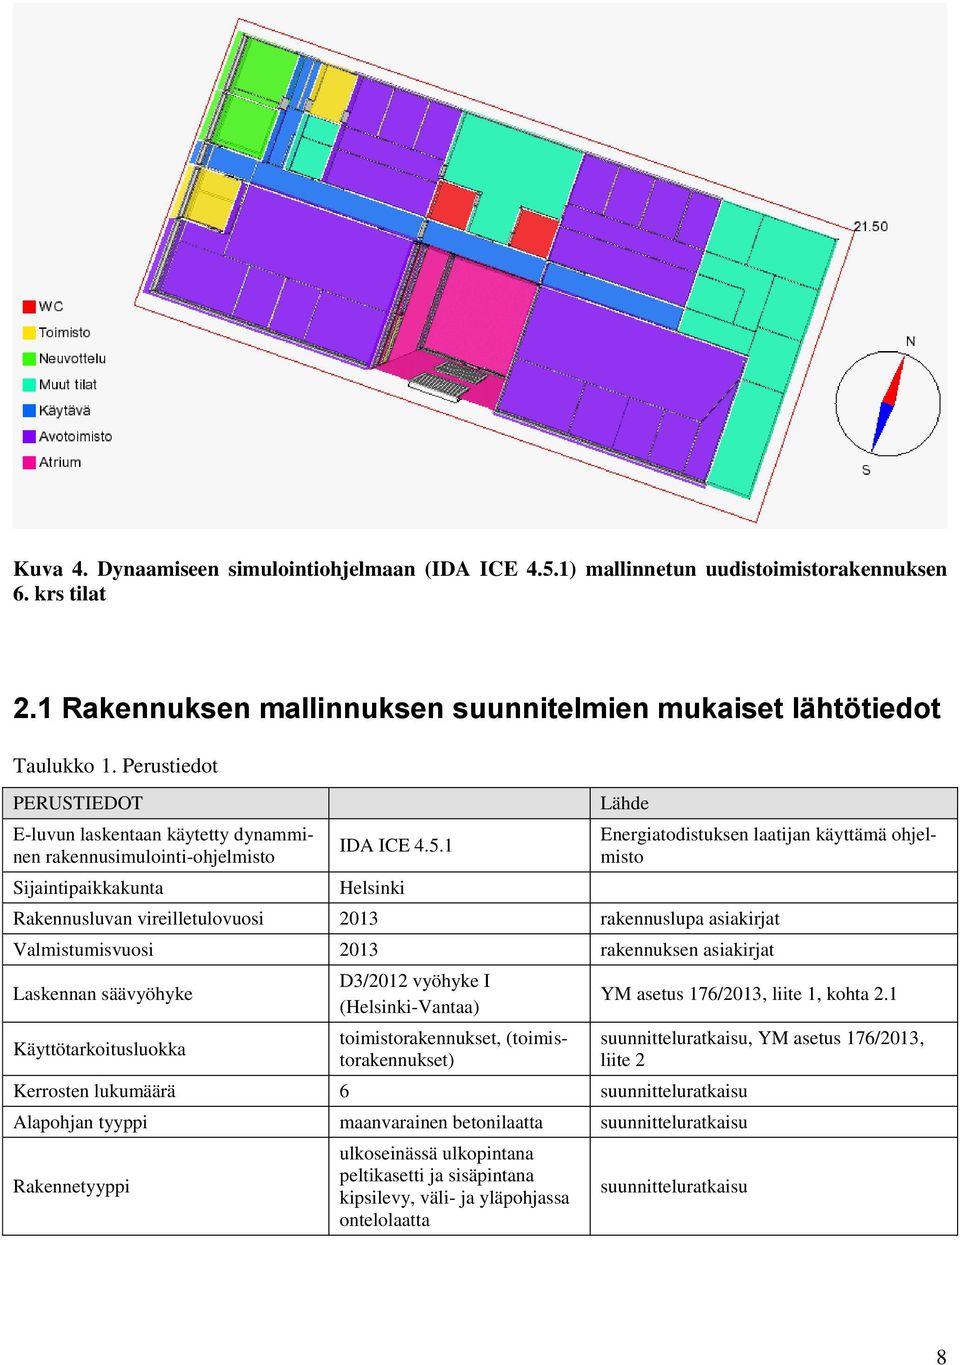 1 Helsinki Lähde Energiatodistuksen laatijan käyttämä ohjelmisto Rakennusluvan vireilletulovuosi 2013 rakennuslupa asiakirjat Valmistumisvuosi 2013 rakennuksen asiakirjat Laskennan säävyöhyke